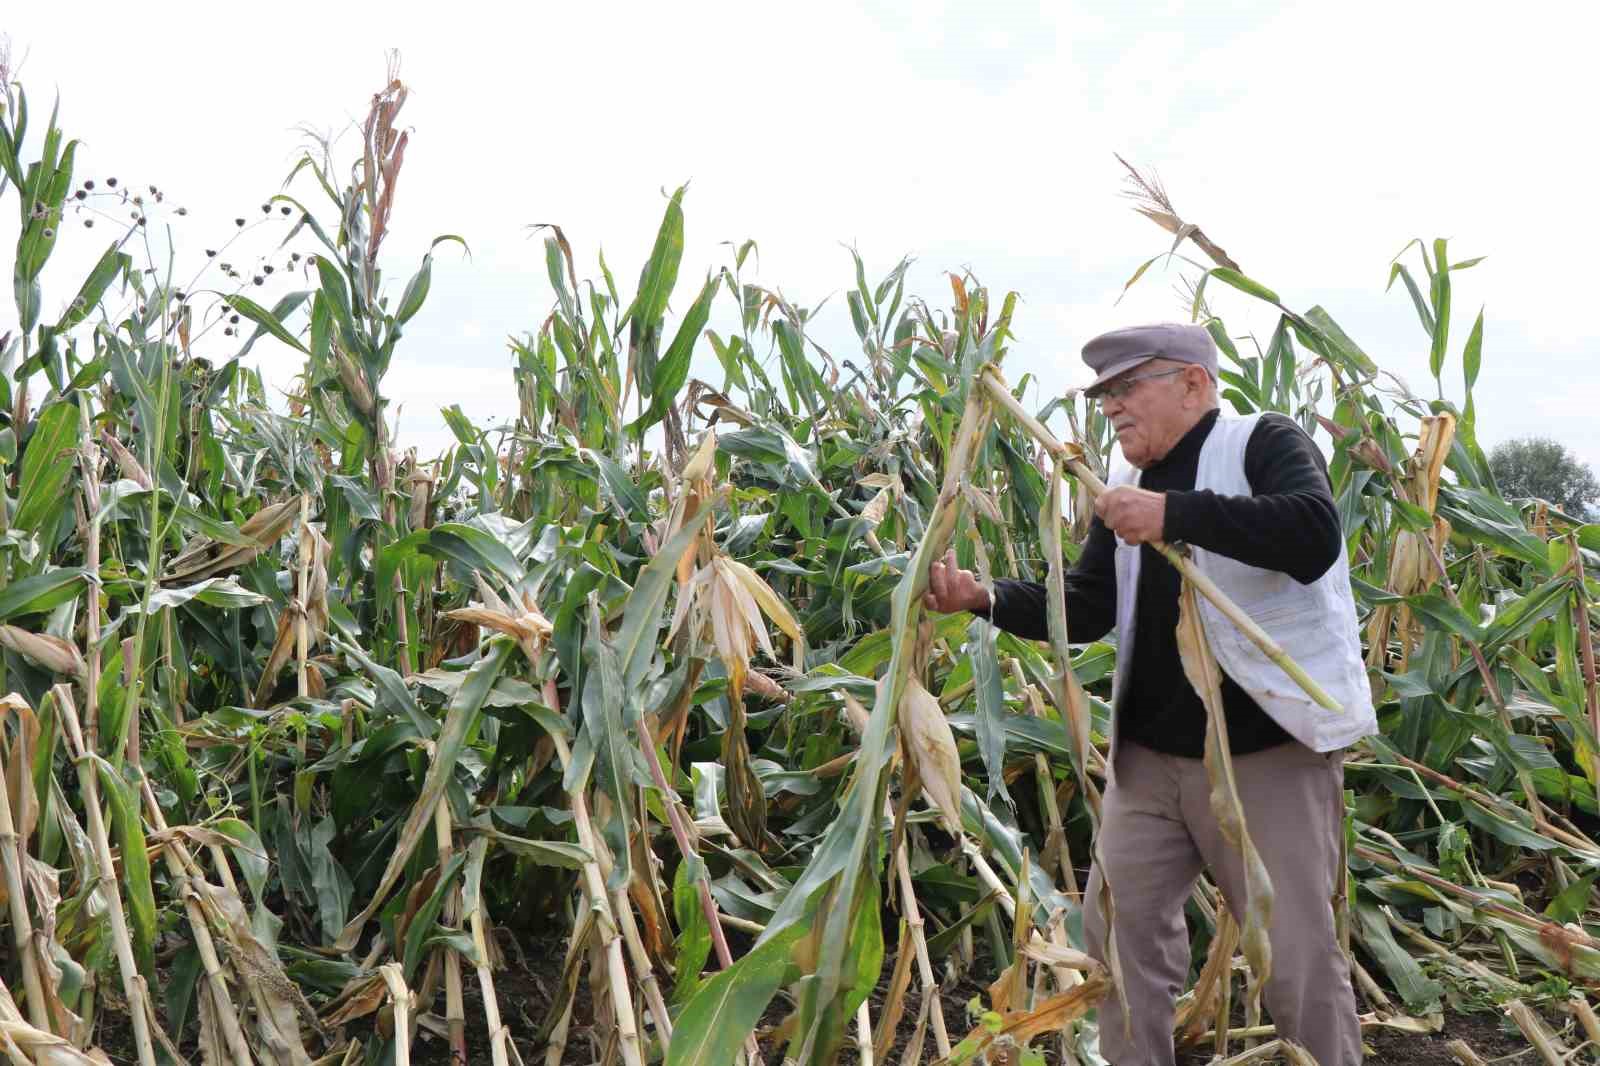 Aşırı yağışlar silajlık mısır tarlalarını vurdu